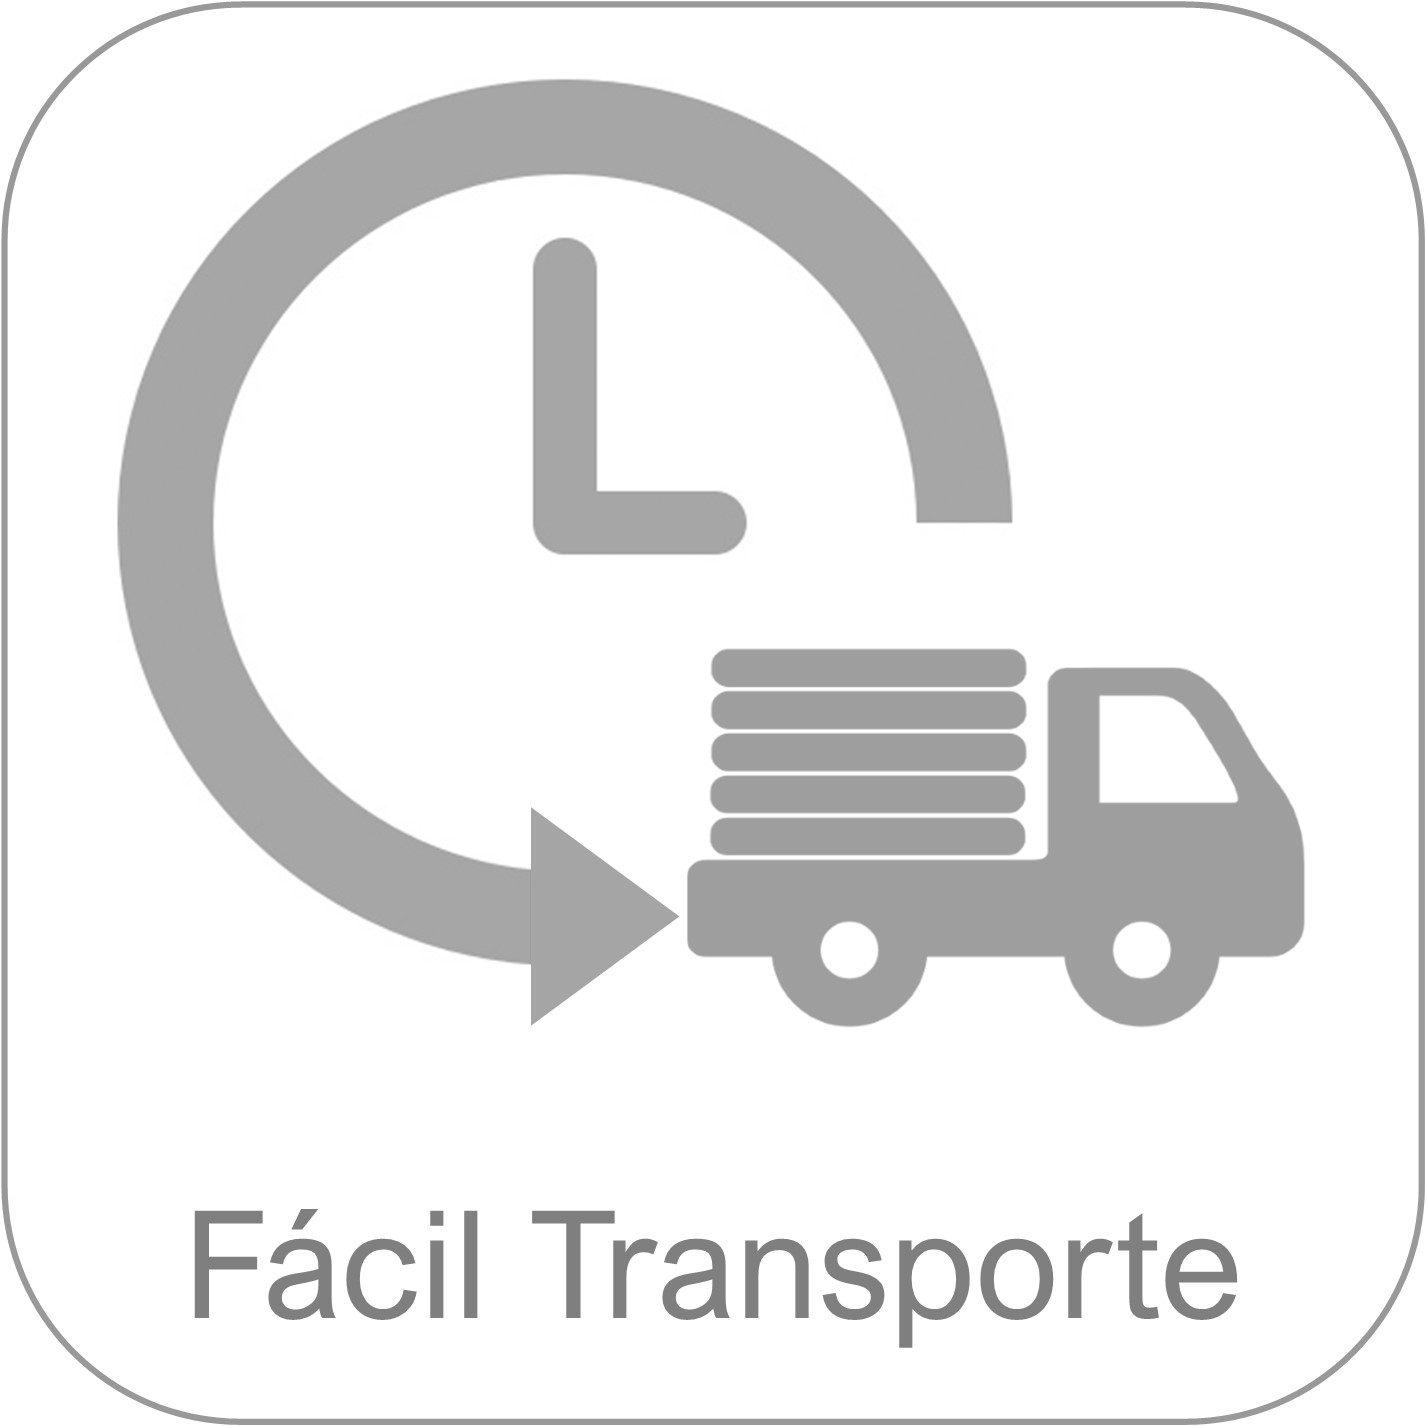 Monobloque NIC20 - Oficinas móviles - Fácil transporte